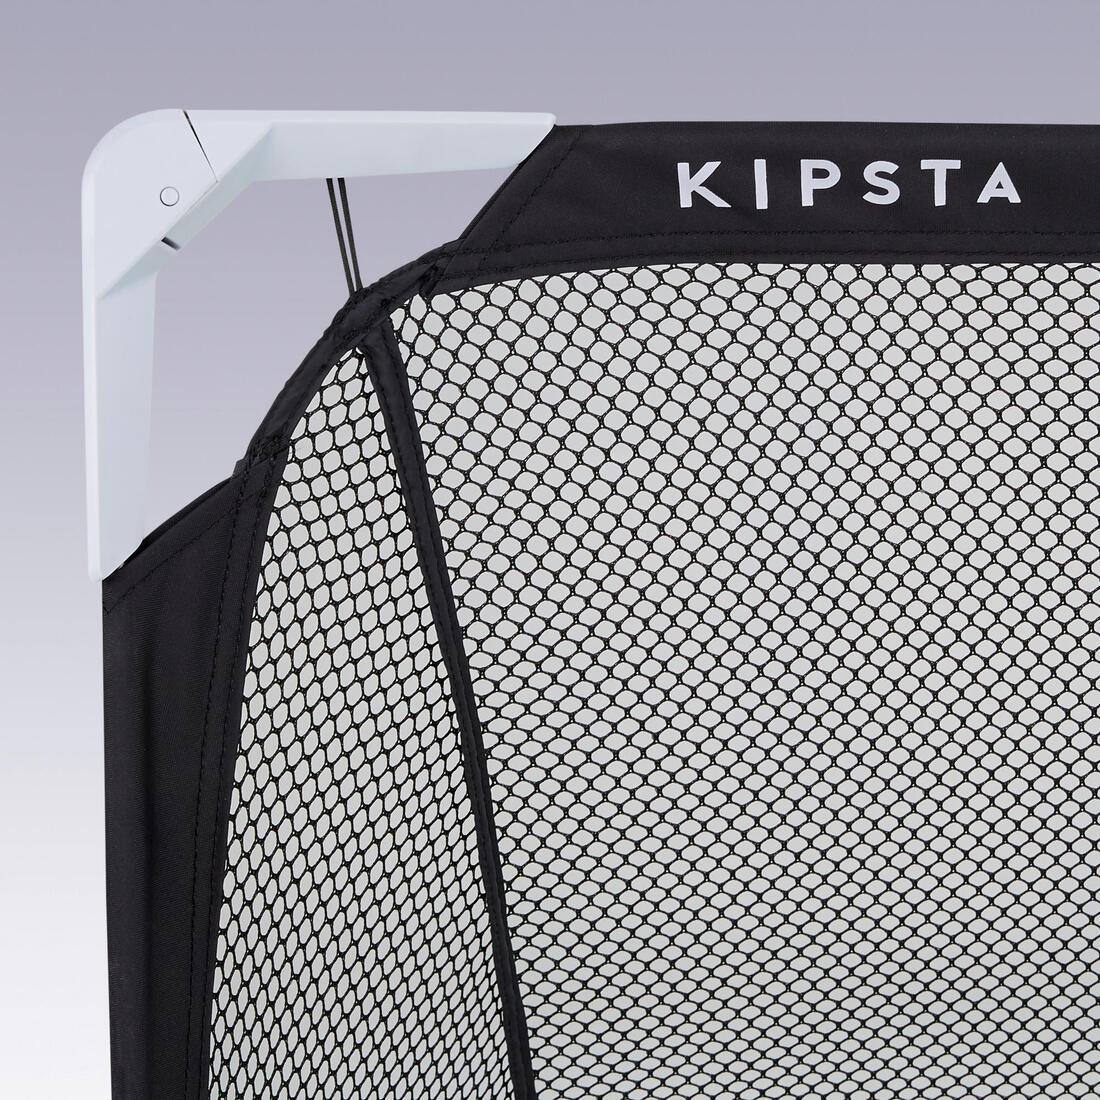 KIPSTA(キプスタ) サッカー 折り畳み式 ゴールケージ Kage